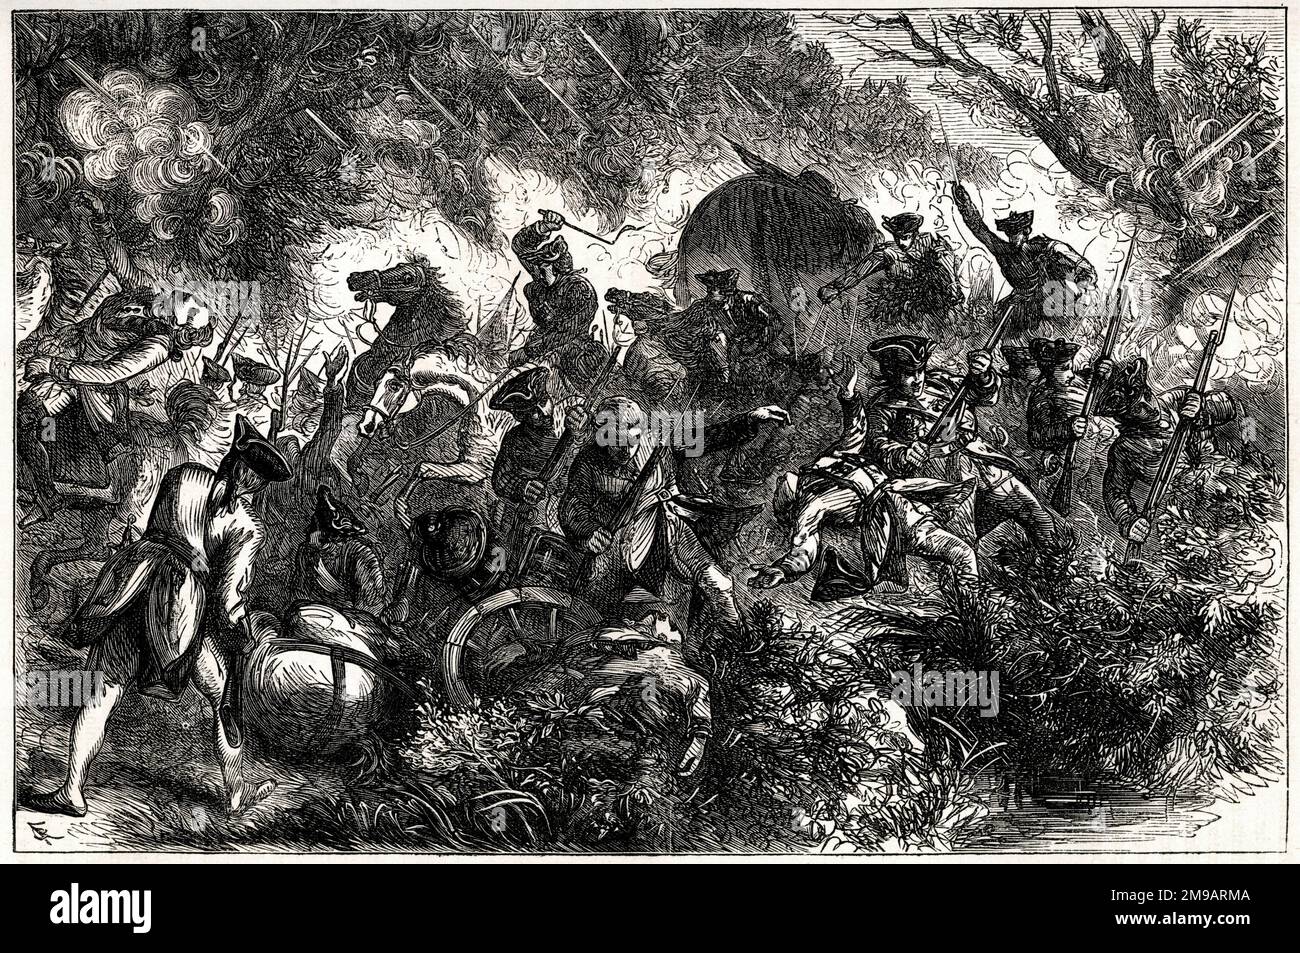 Generalmajor Edward Braddocks Truppe griff am 9. Juli 1755 während einer Expedition gegen das von Frankreich besetzte Ohio River Valley an; einige Tage später starb er an seinen Wunden. Die Schlacht fand in den frühen Stadien des Französischen und Indischen Krieges (1754–1763) statt. Stockfoto